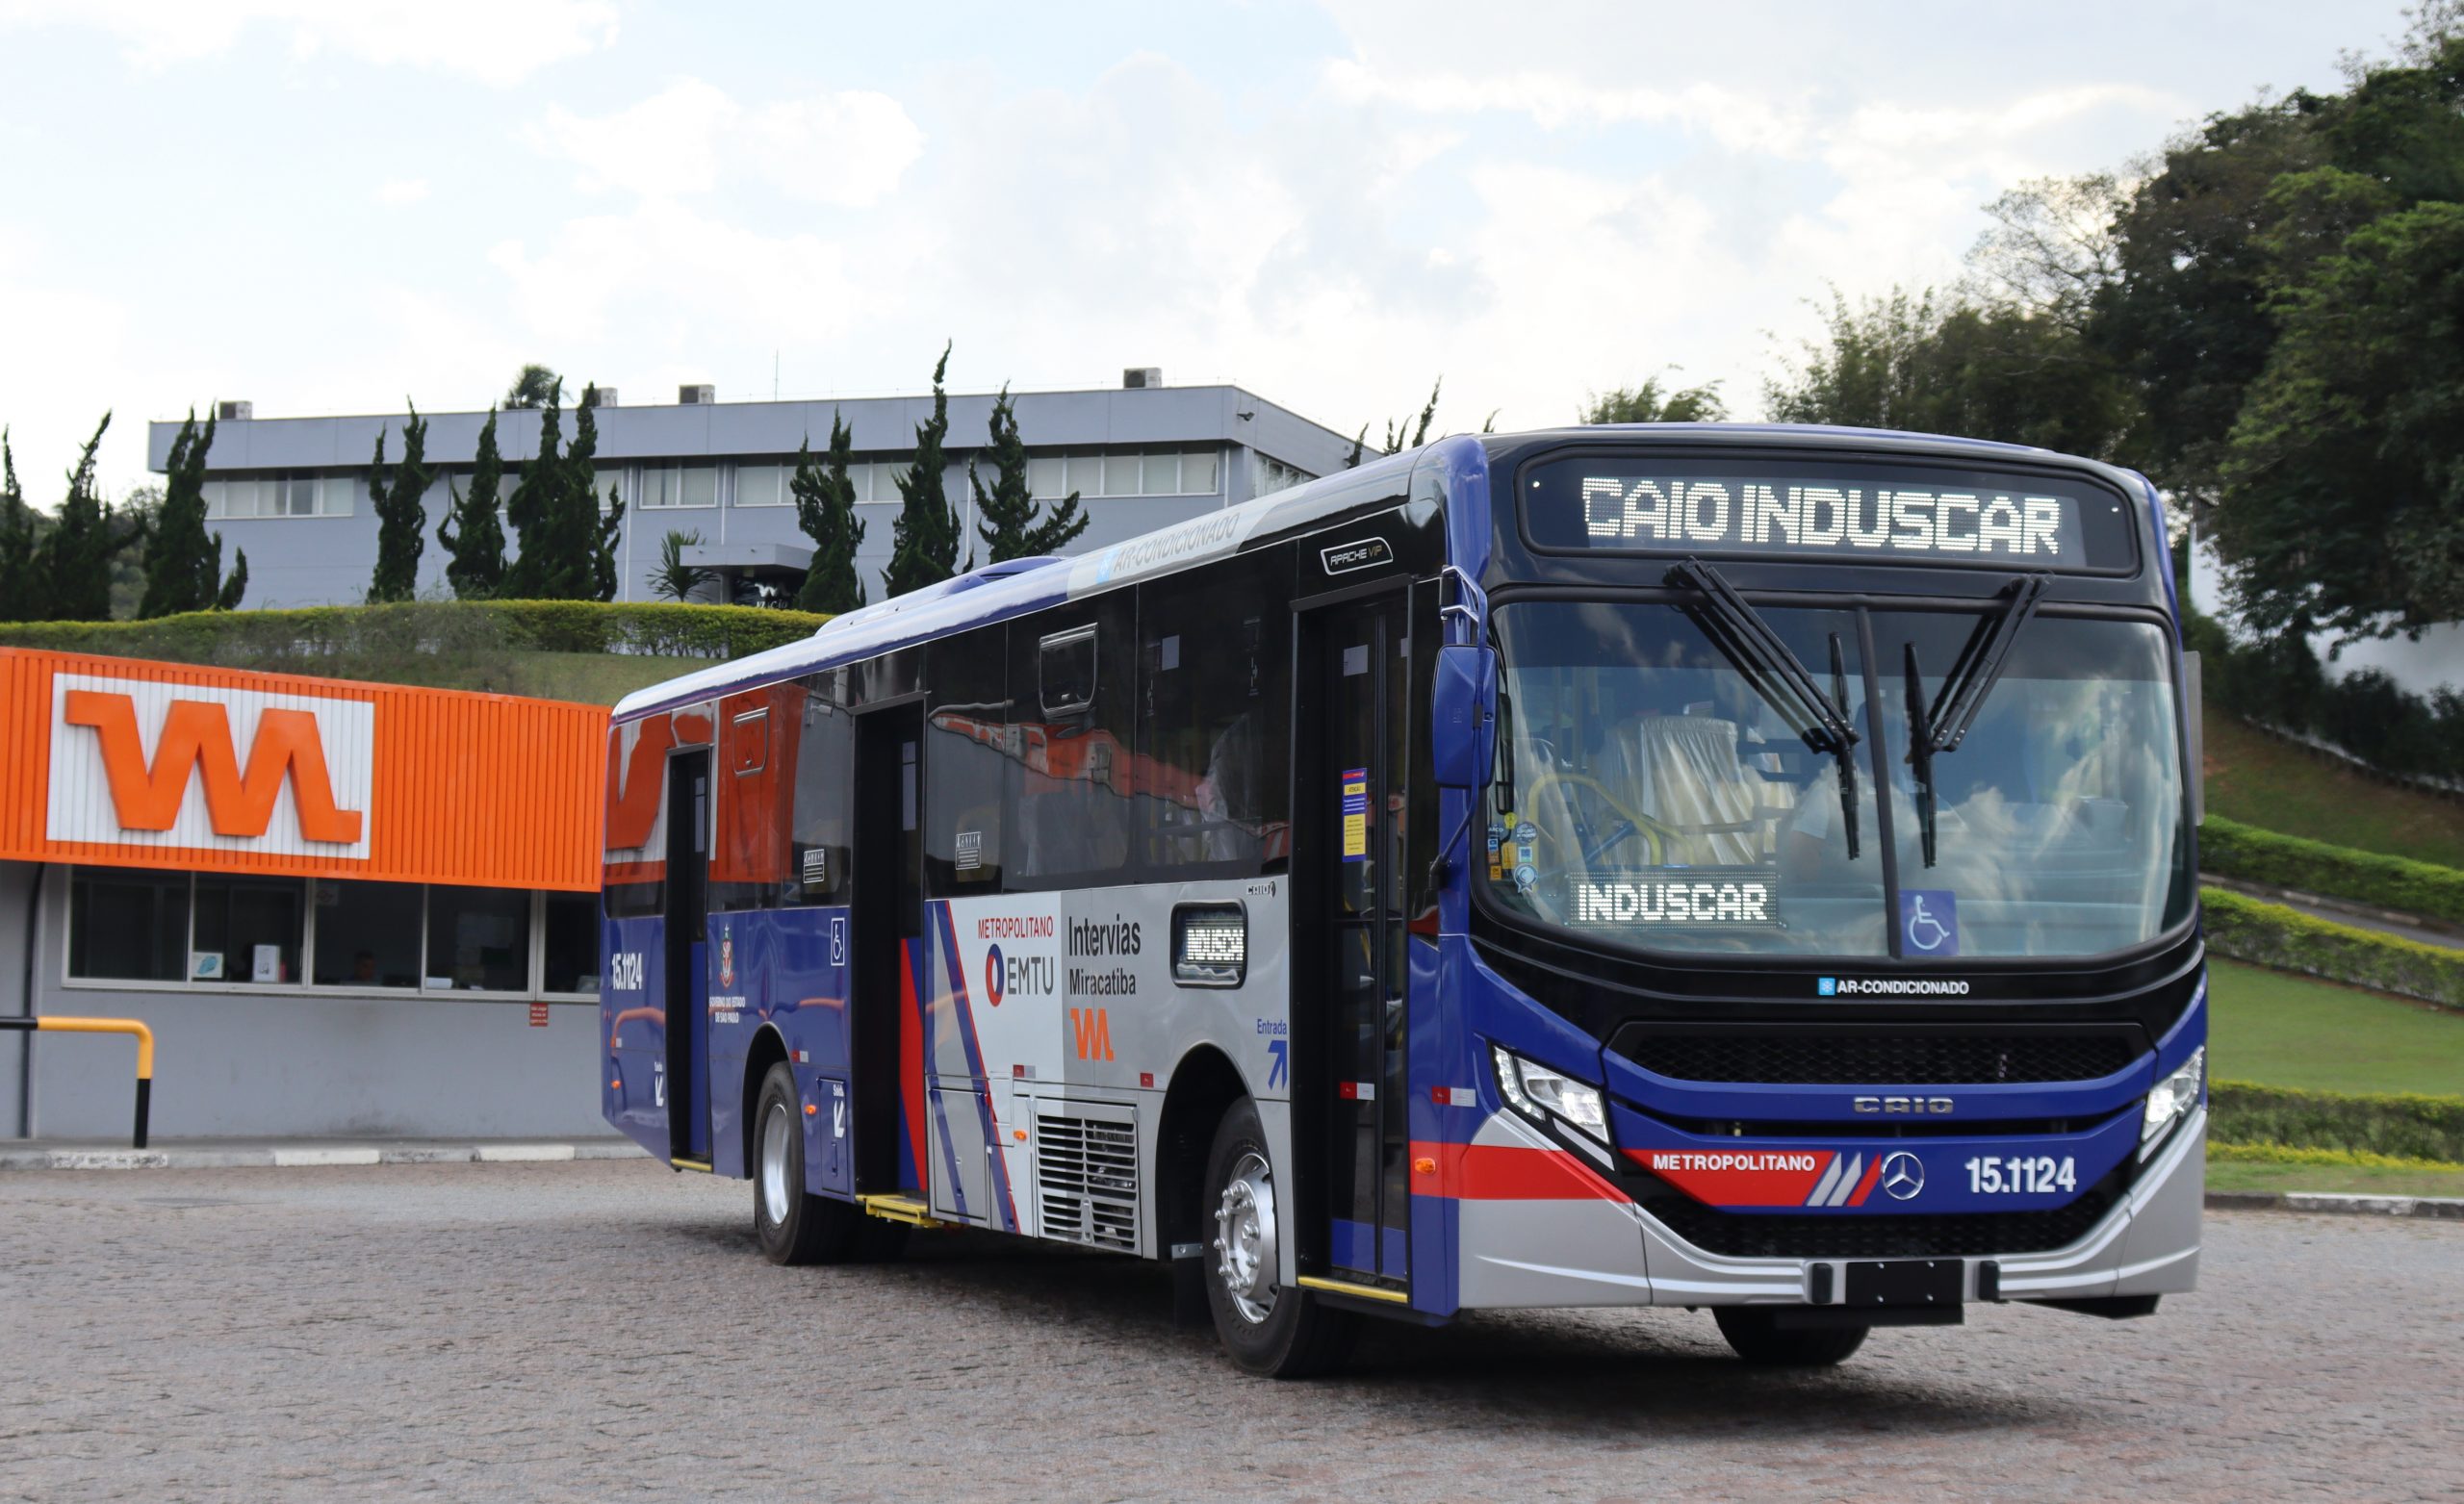 Ônibus da Viação Miracatiba posicionado junto ao setor de plantão, onde possui o logotipo na faixada do local.